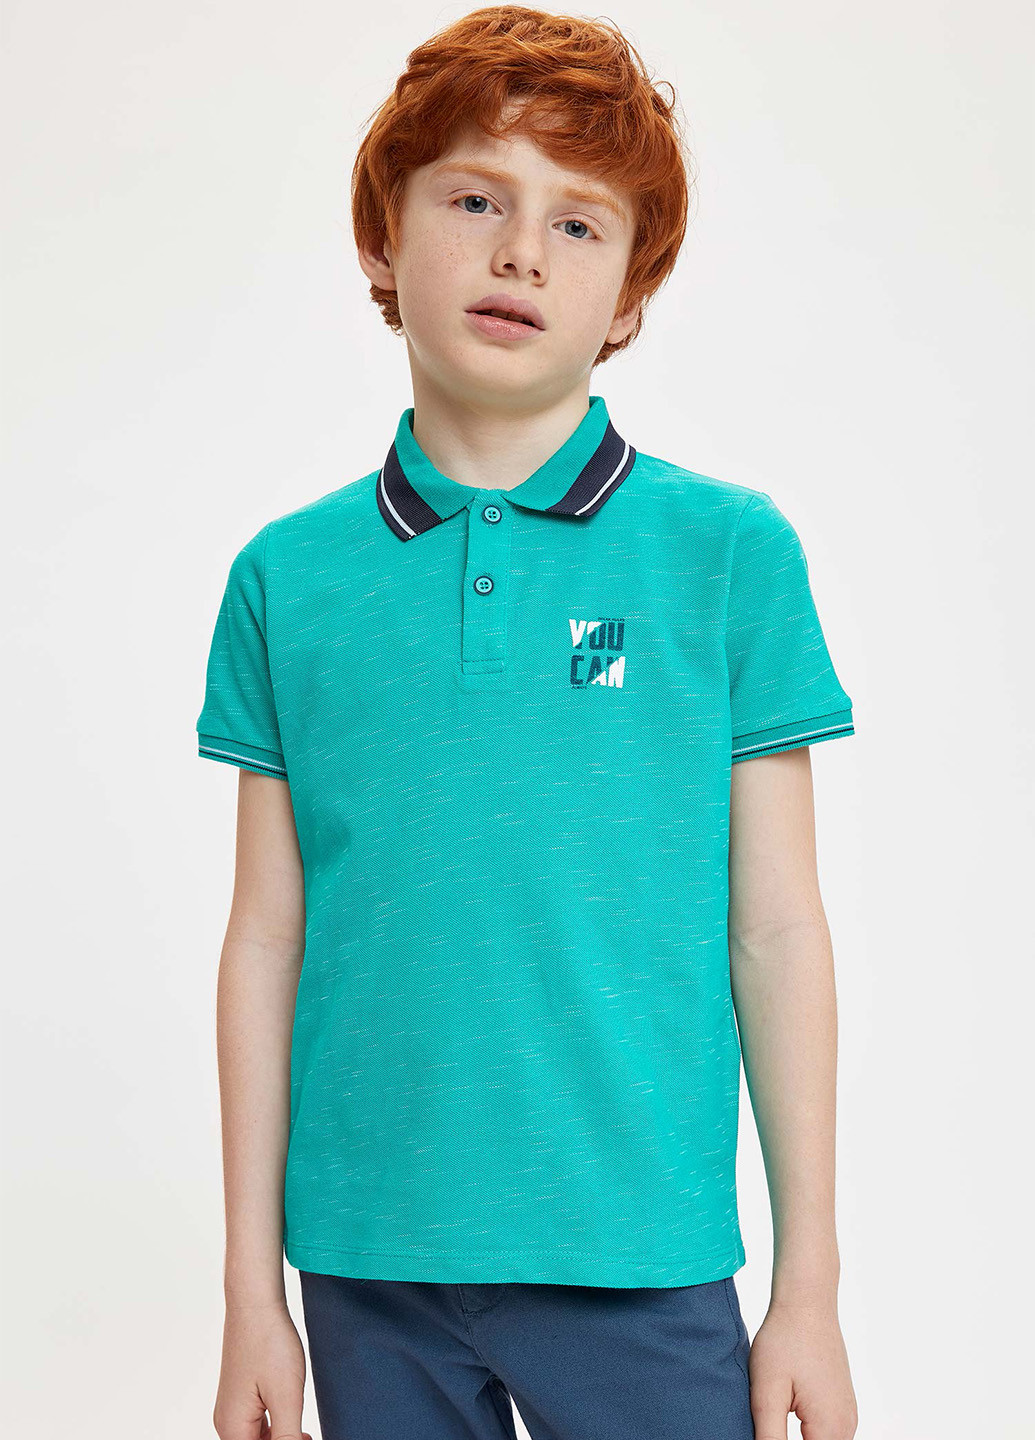 Зеленая детская футболка-поло для мальчика DeFacto с логотипом